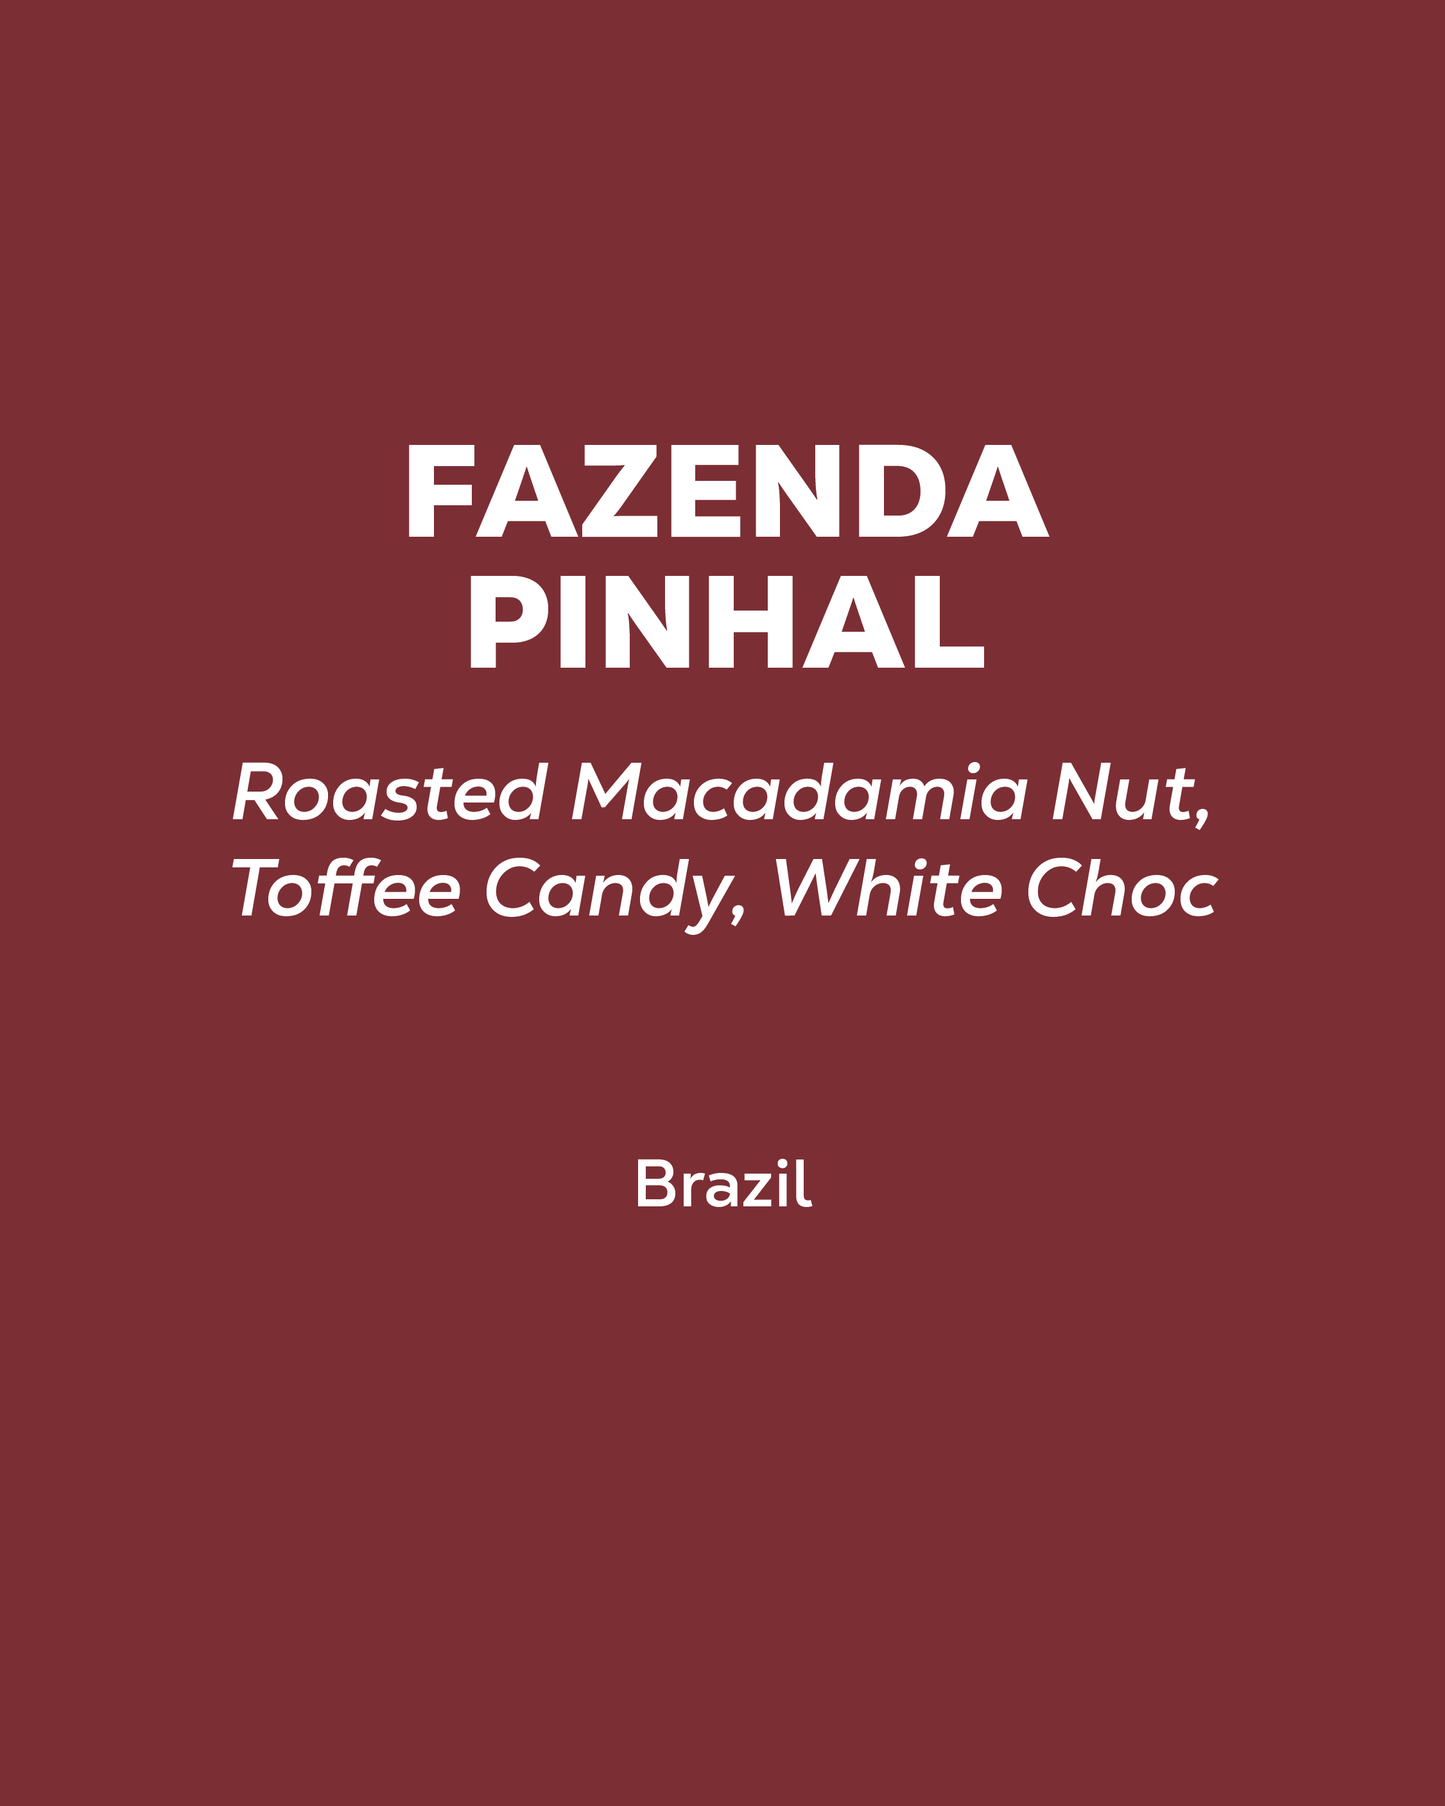 Brazil - Fazenda Pinhal